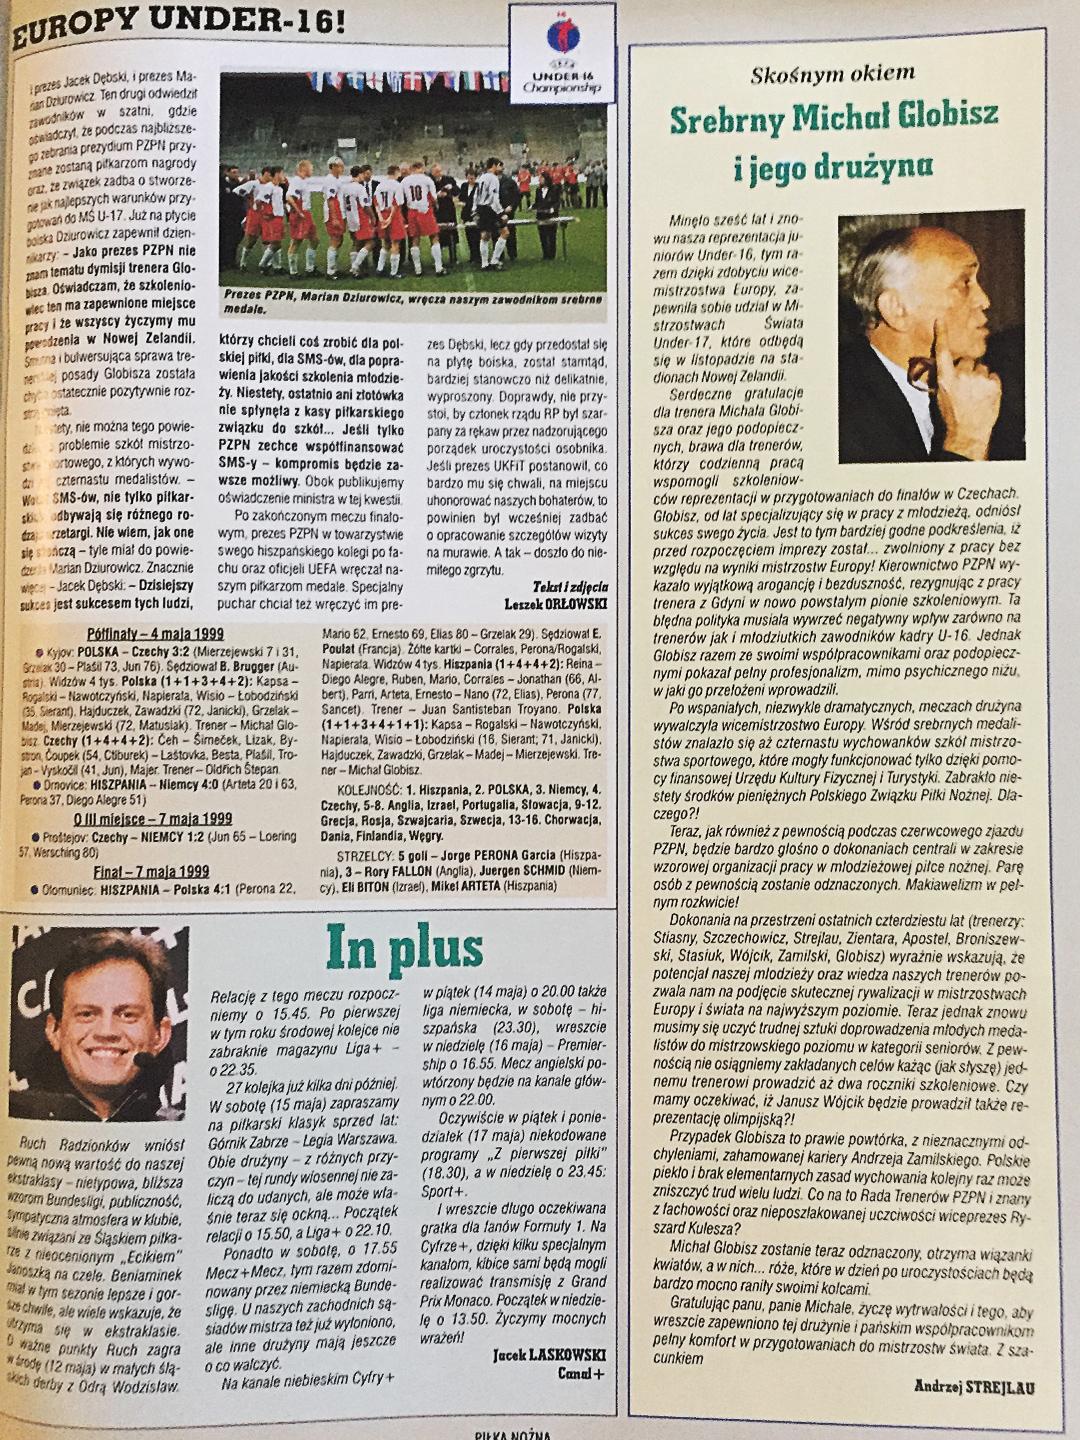 Okładka Piłki Nożnej po meczu Polska - Hiszpania 1:4 U16 (07.05.1999)